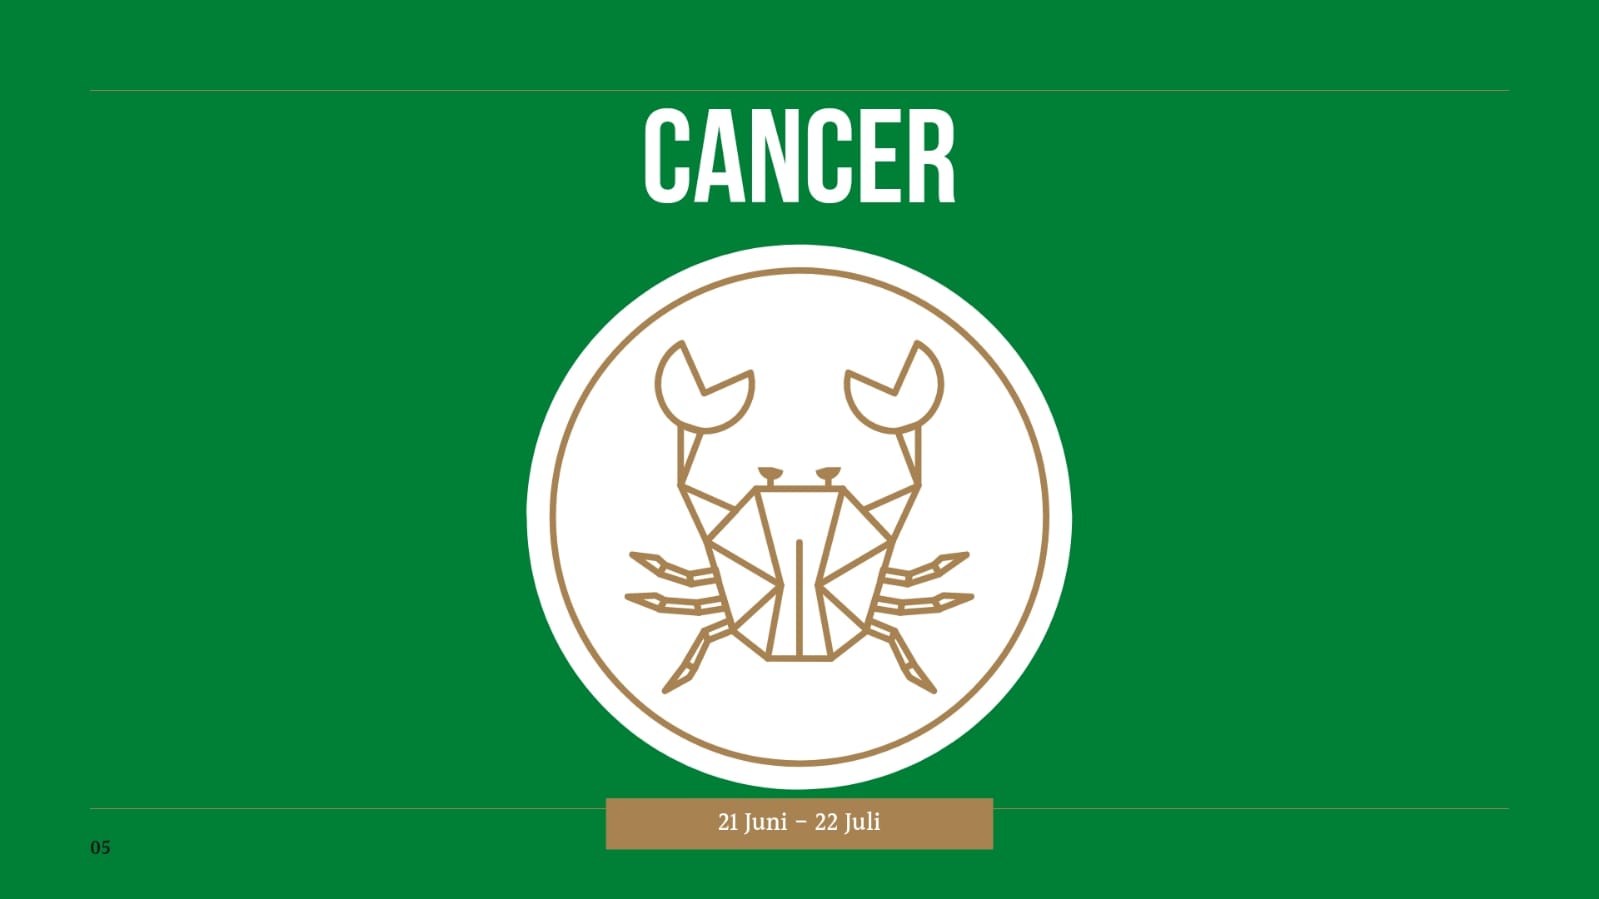 Ramalan Zodiak Cancer